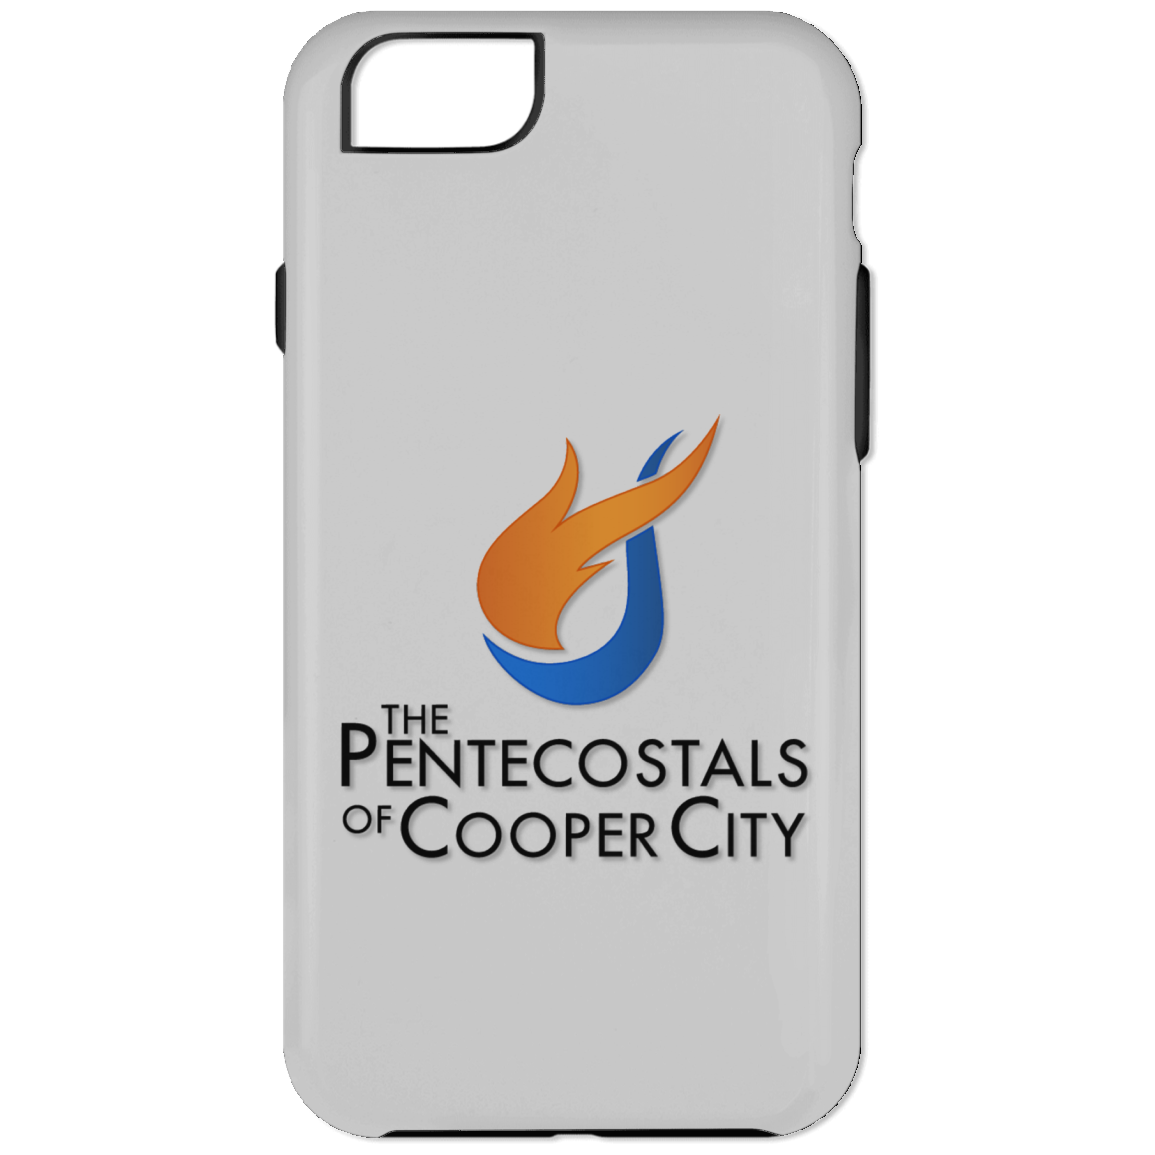 The Pentecostals Of Cooper City - iPhone 6 Plus Tough Case